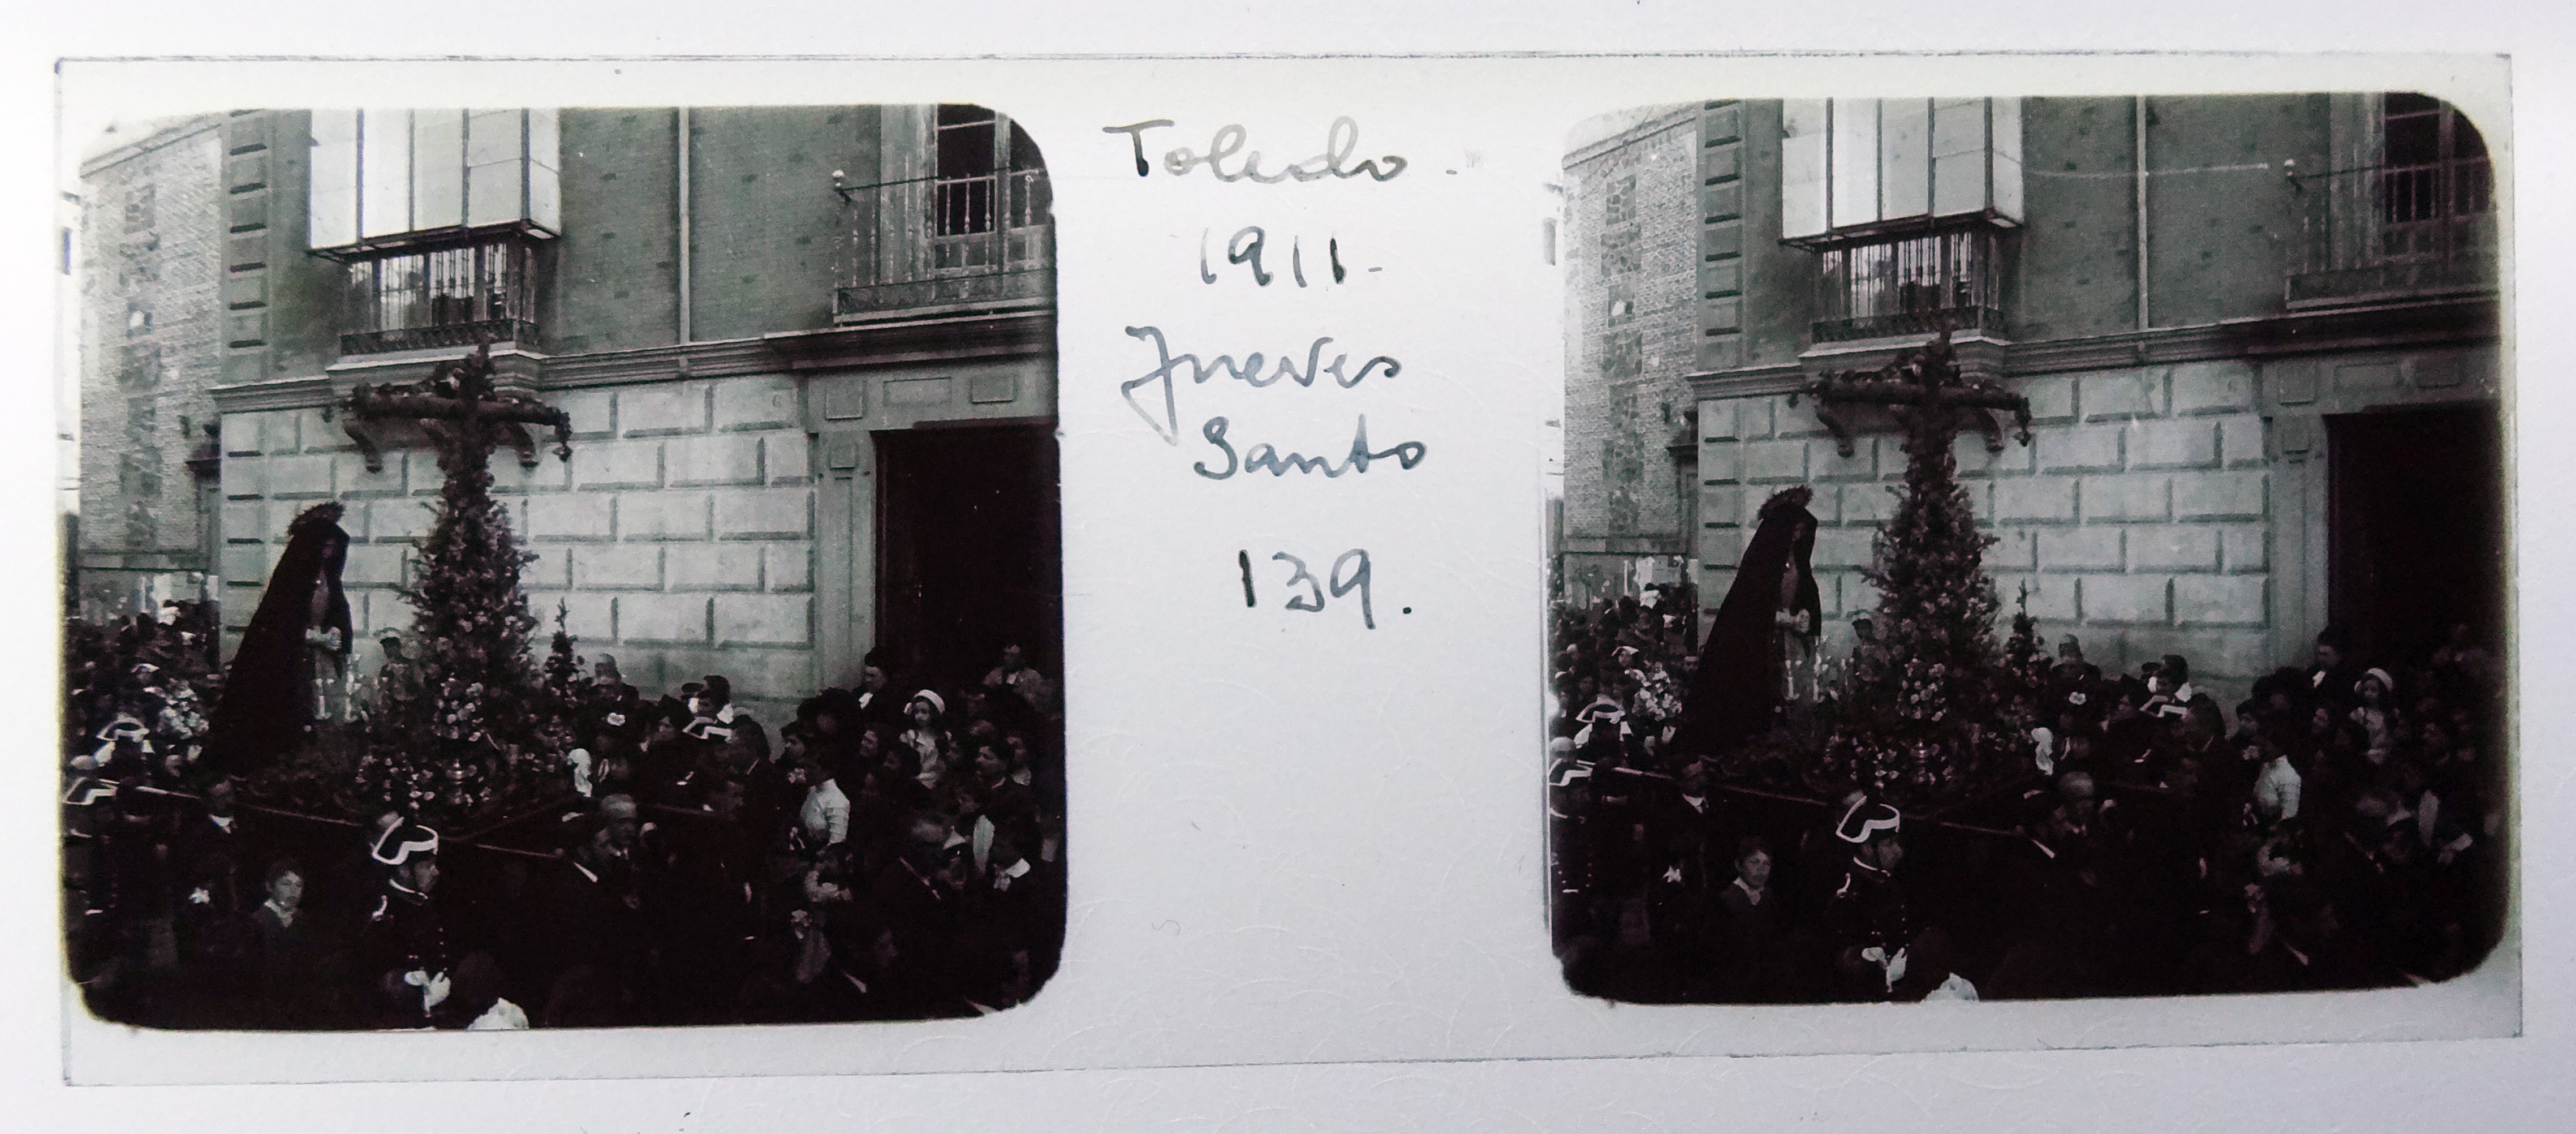 Procesión de Semana Santa, Plaza de San Vicente. Fotografía de Francisco Rodríguez Avial hacia 1910 © Herederos de Francisco Rodríguez Avial